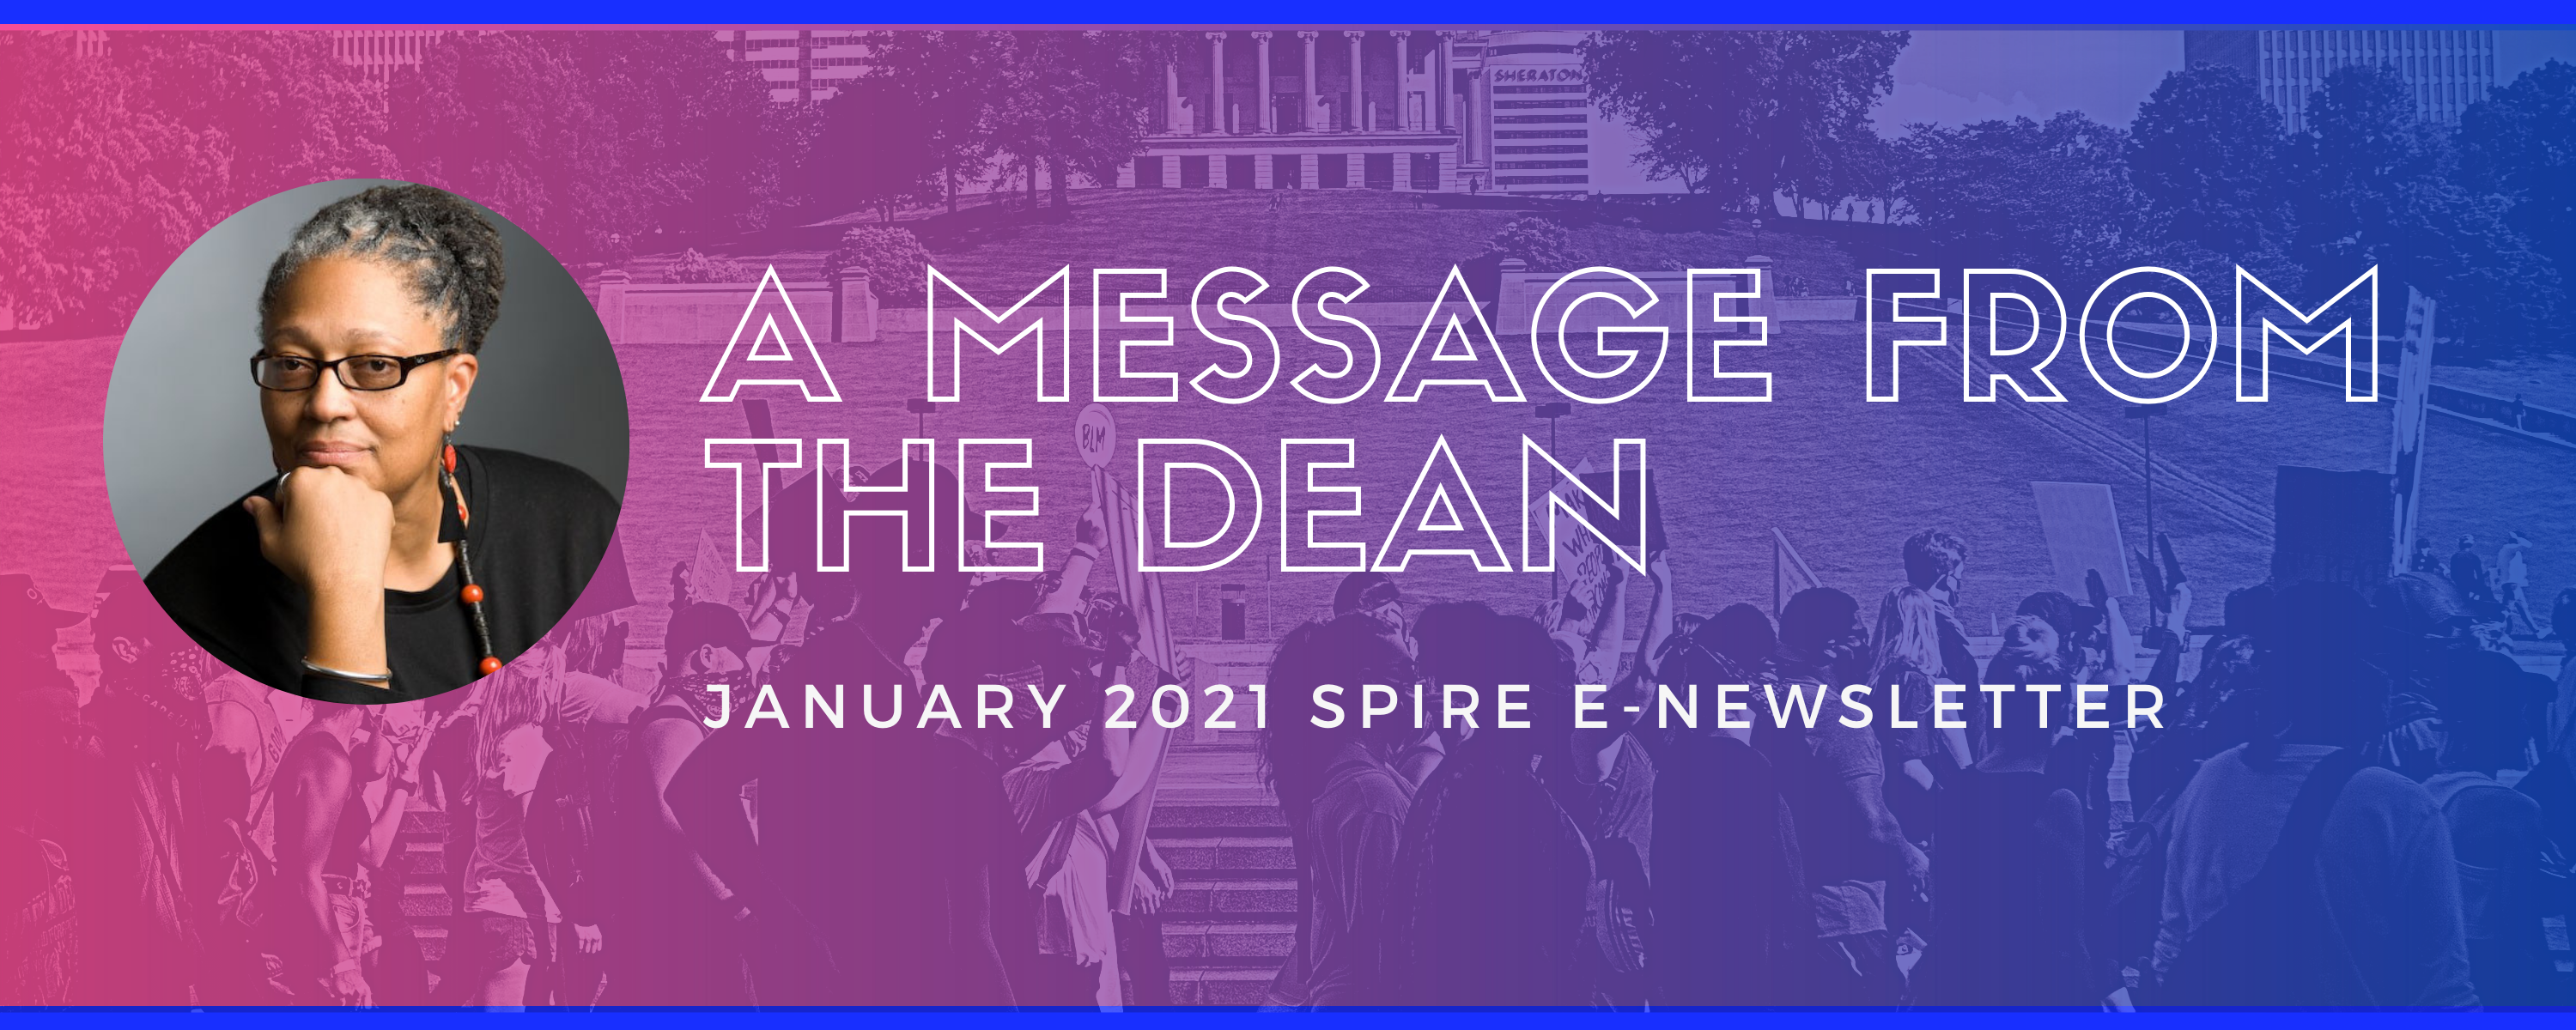 dean-message-jan2021-spire-banner